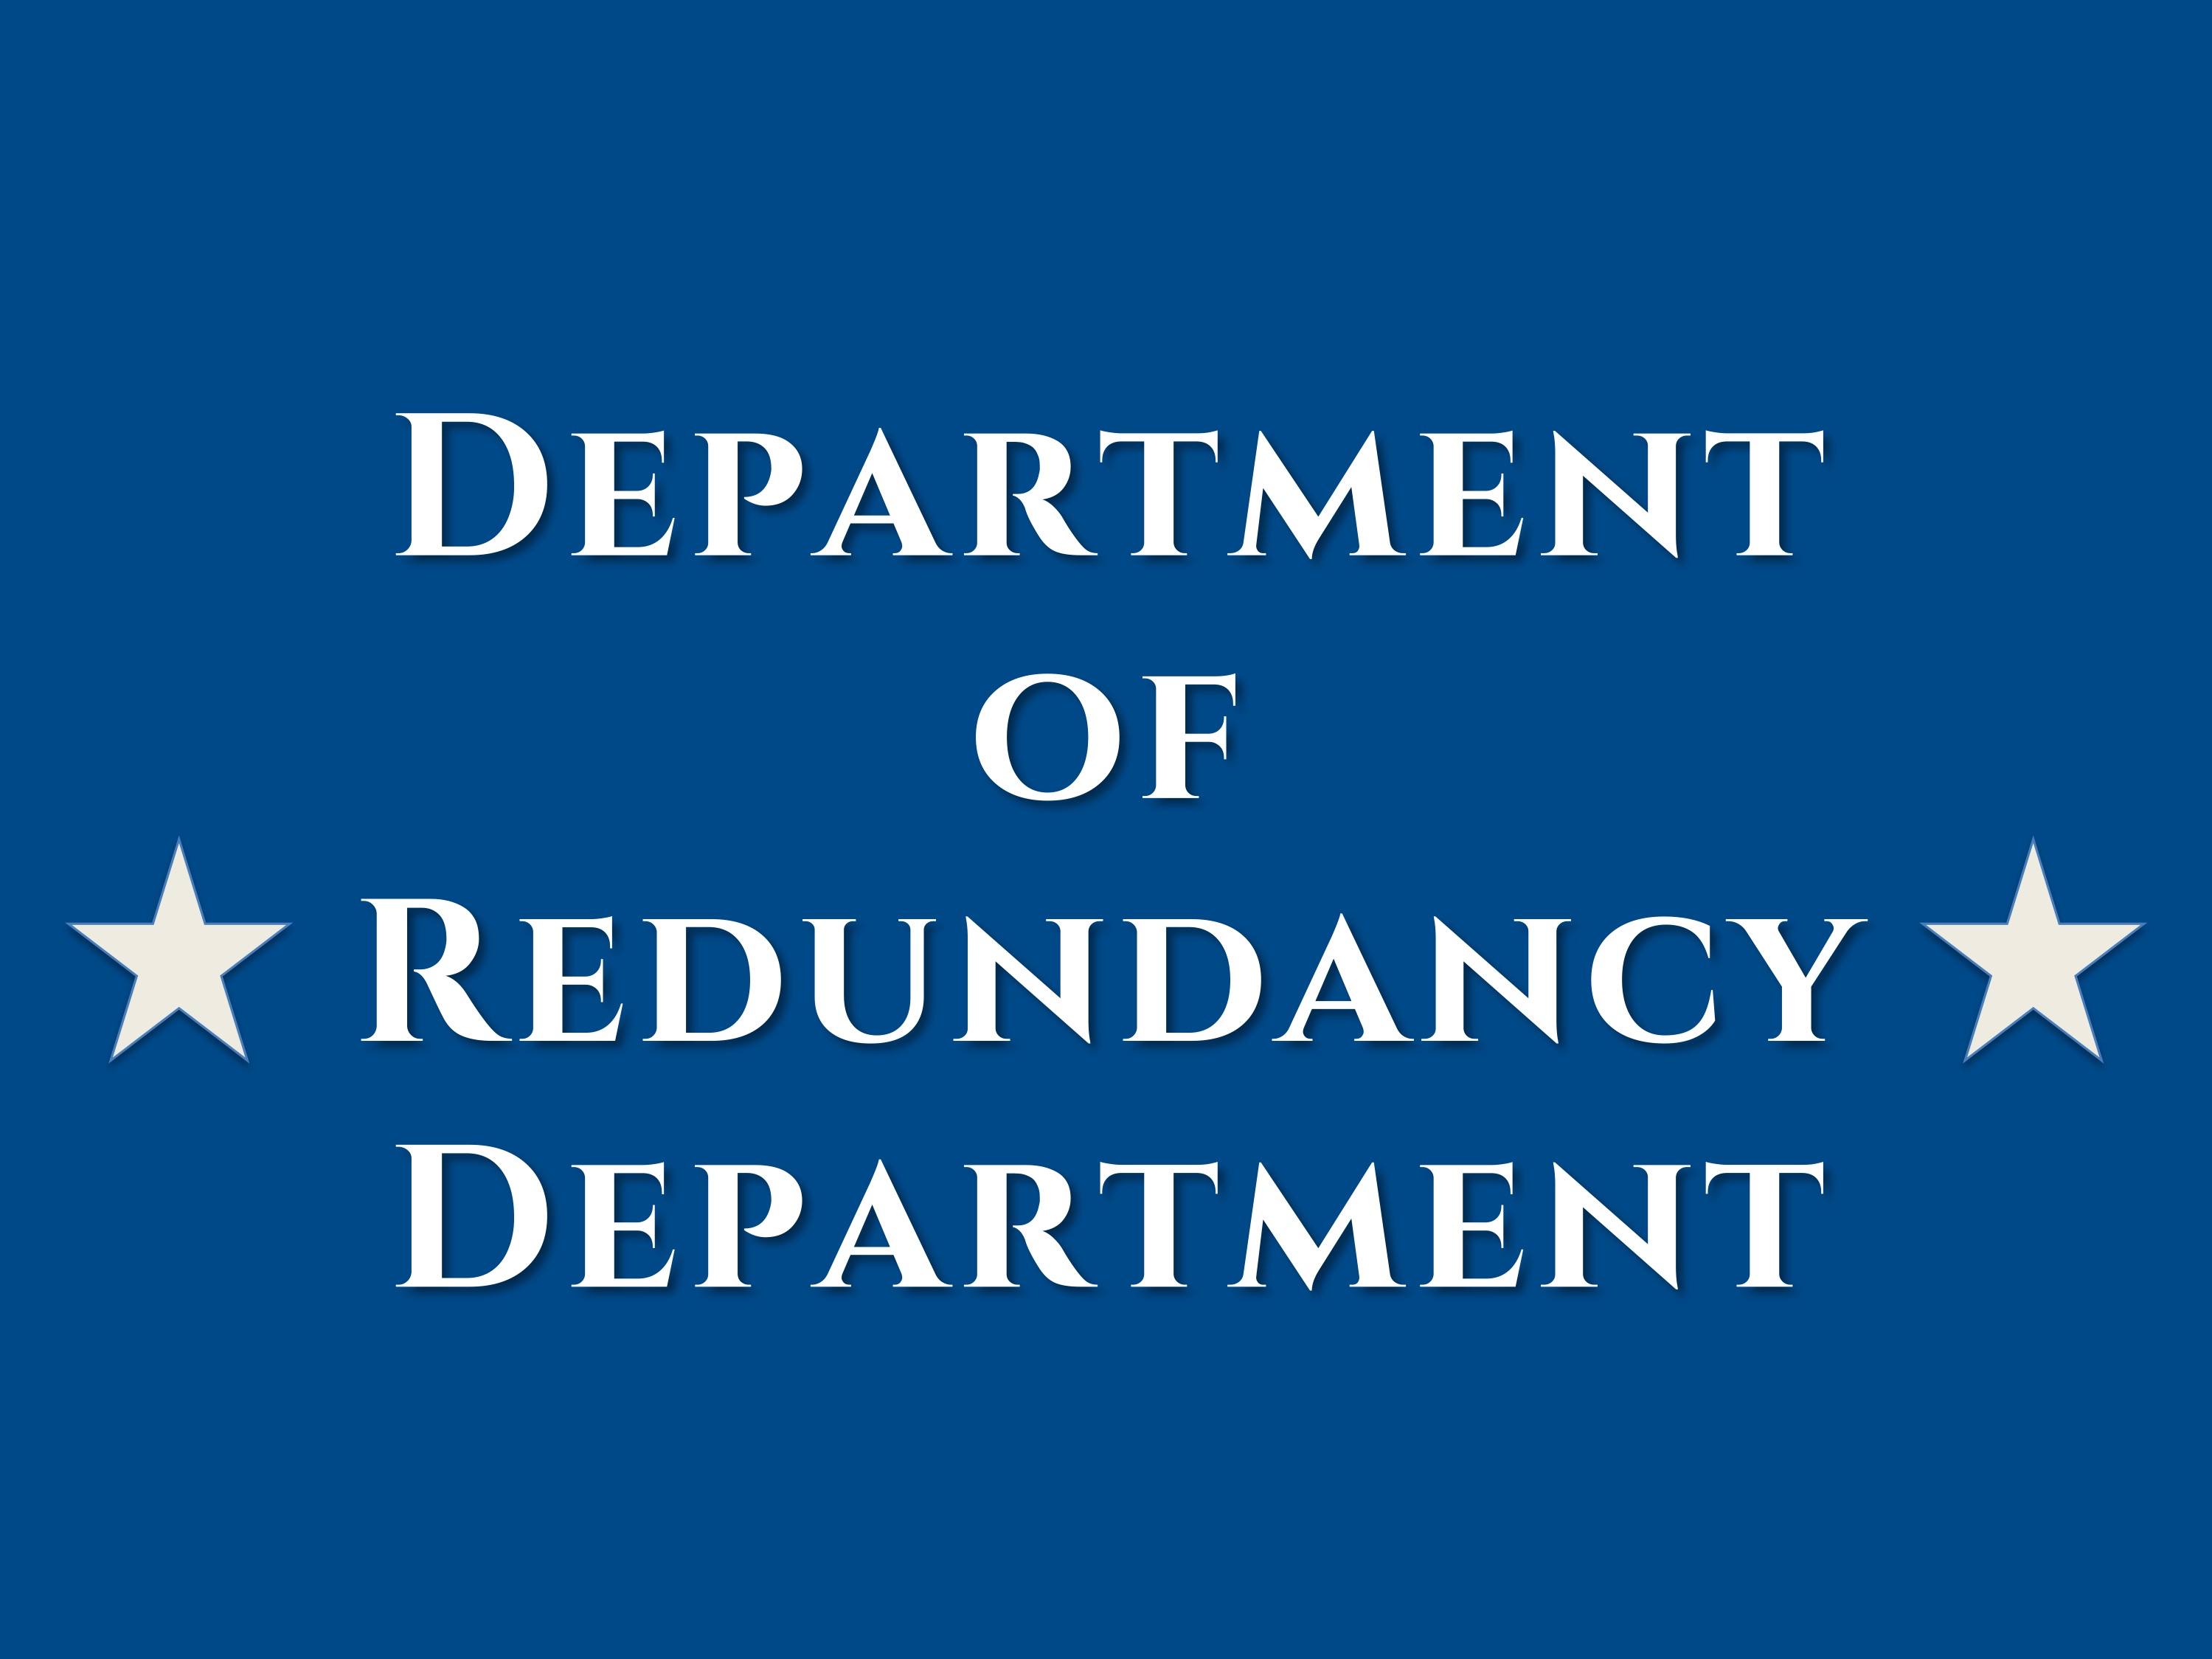 Department of redundancy